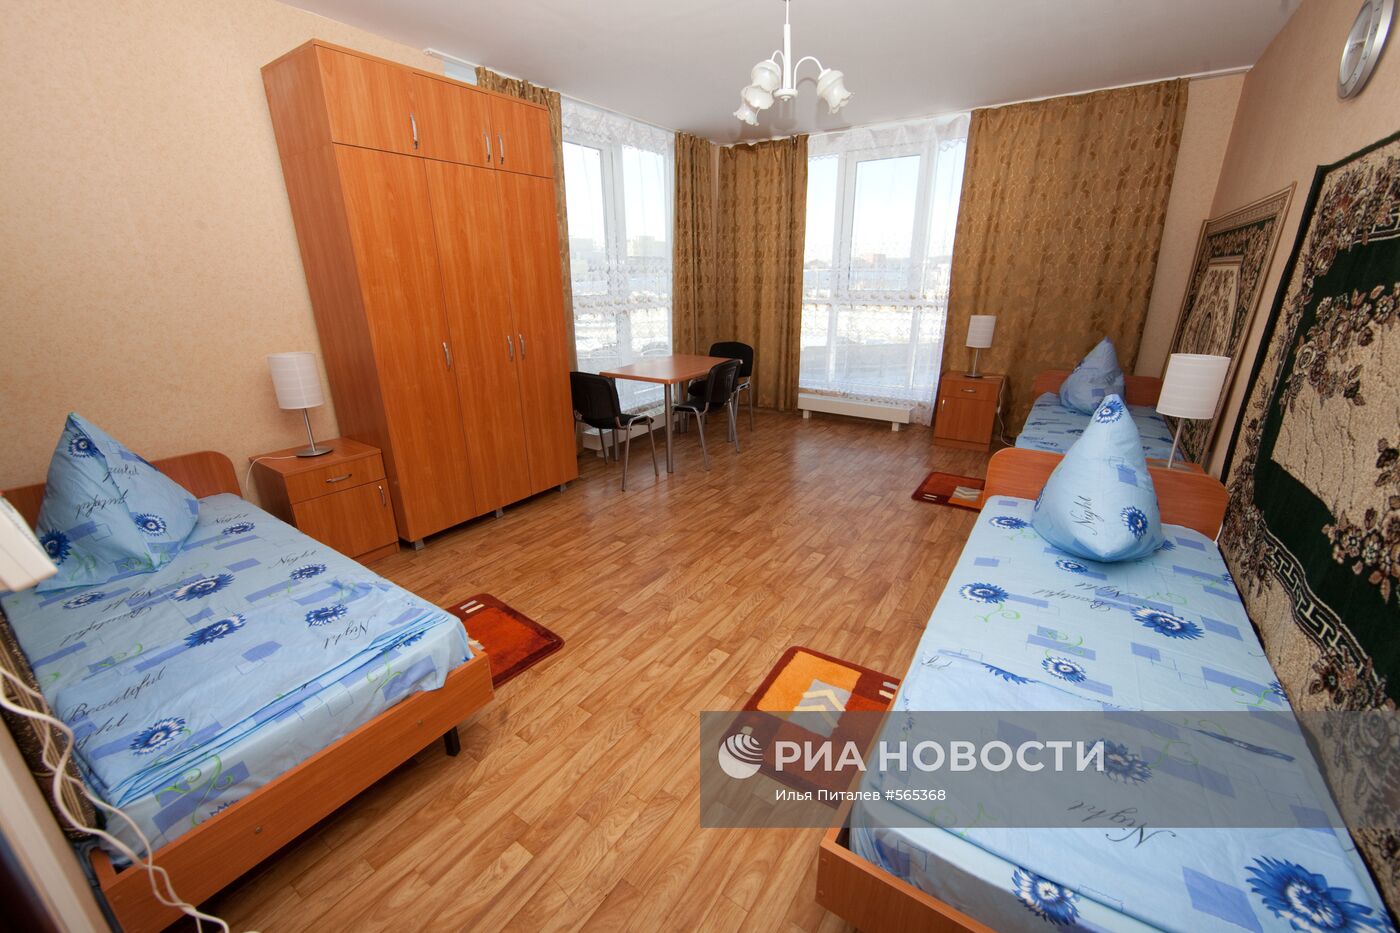 Новое общежитие для бойцов ОМОНа в Москве